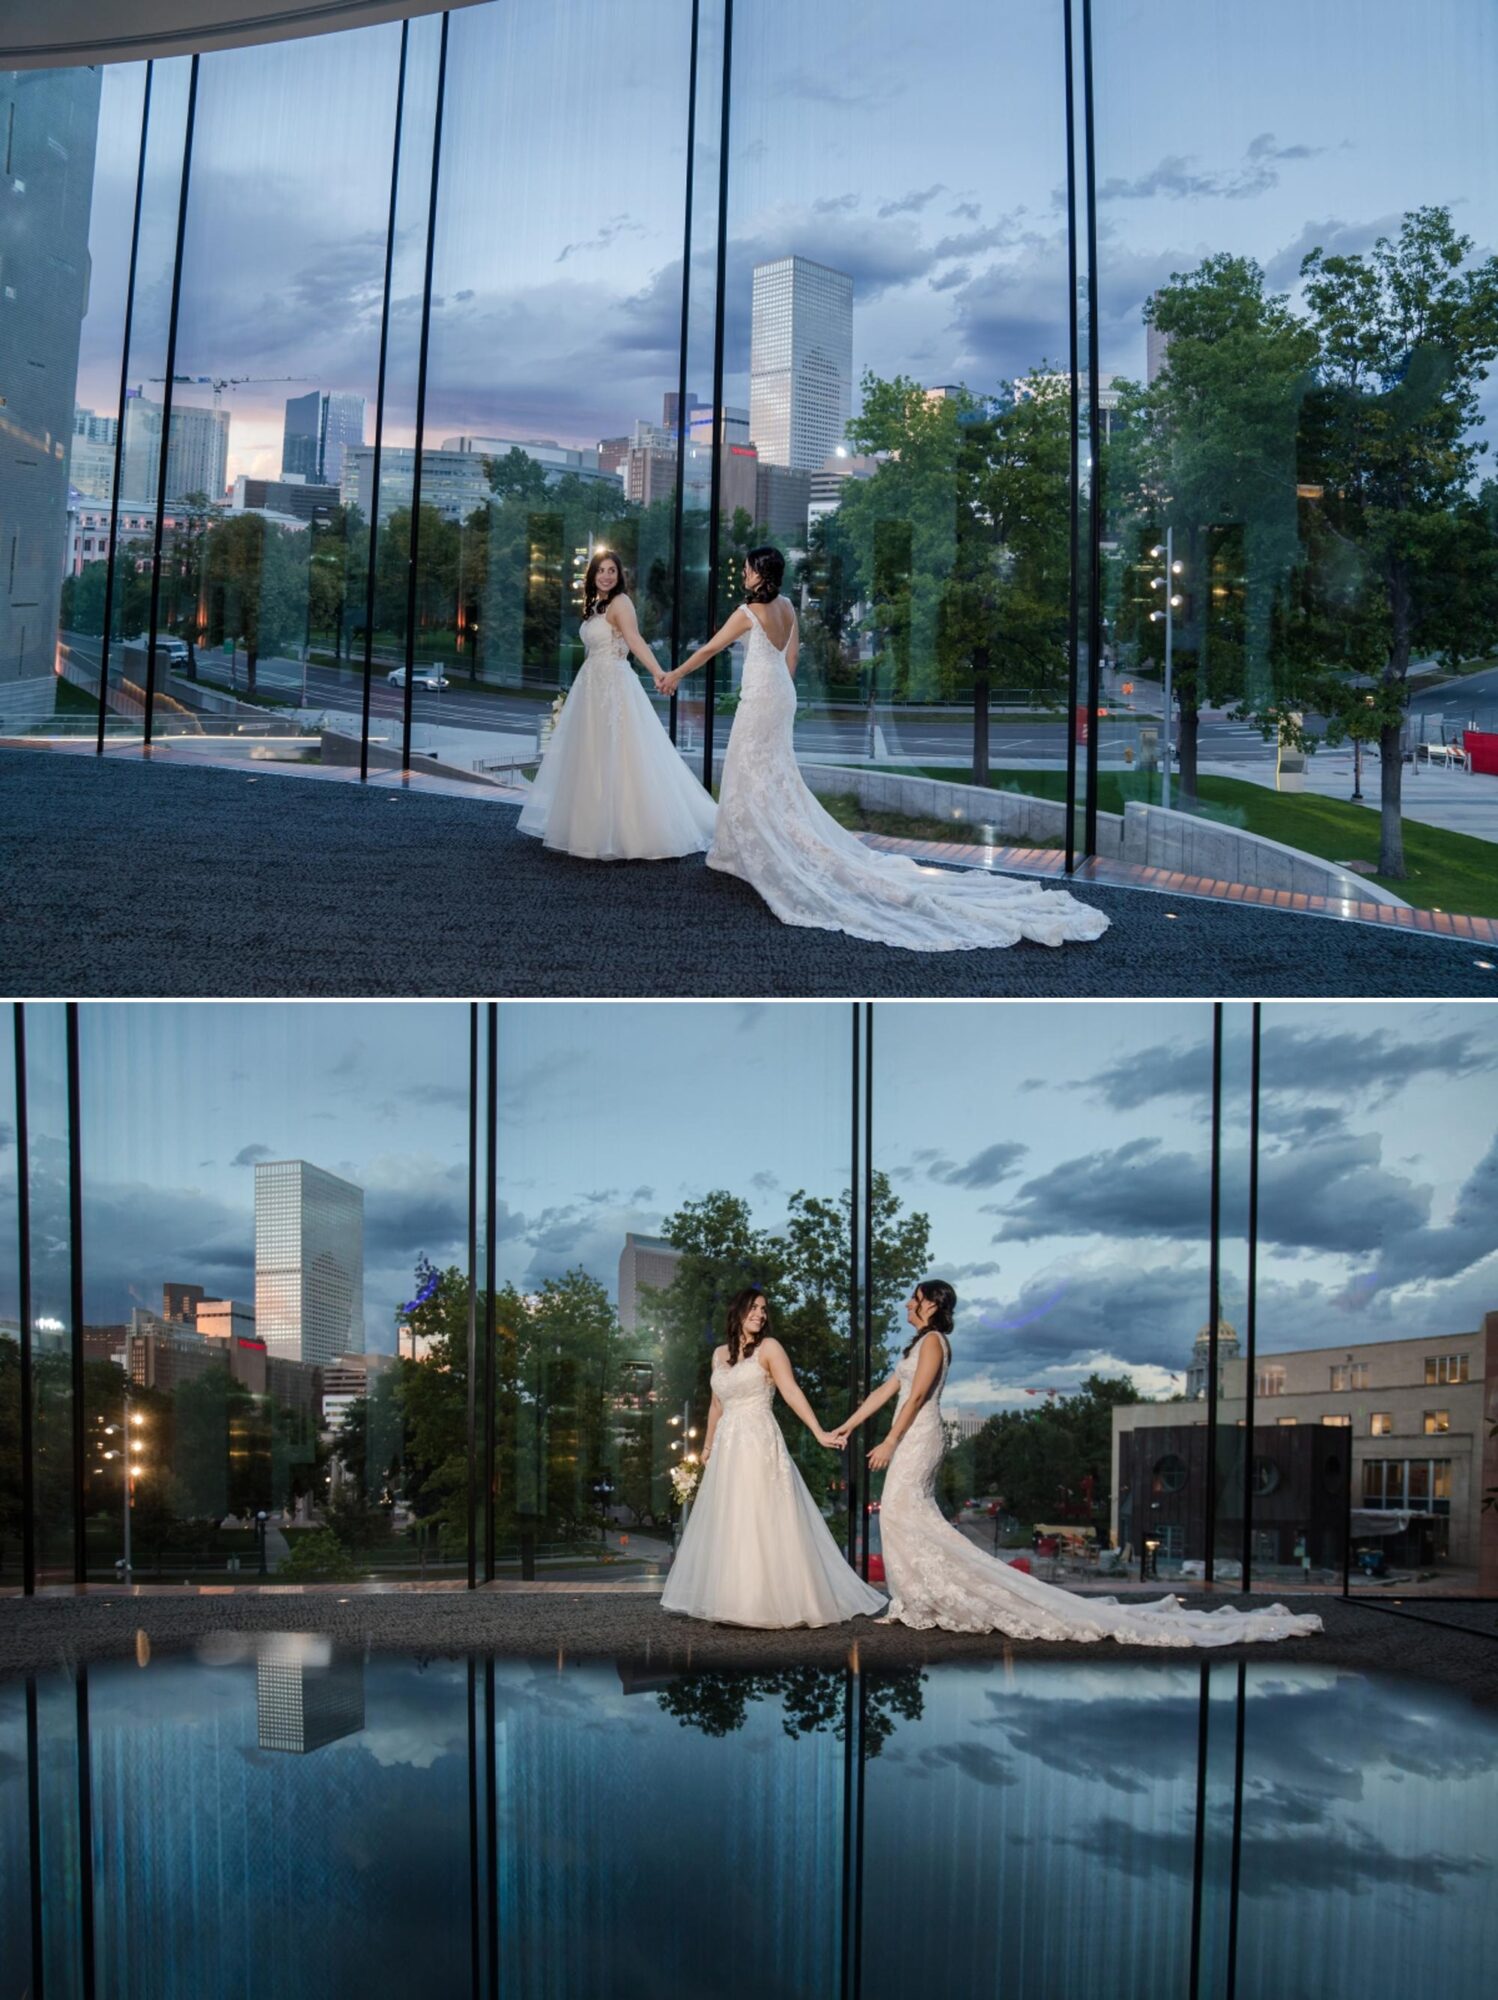 Denver Art Museum wedding ceremony indoor